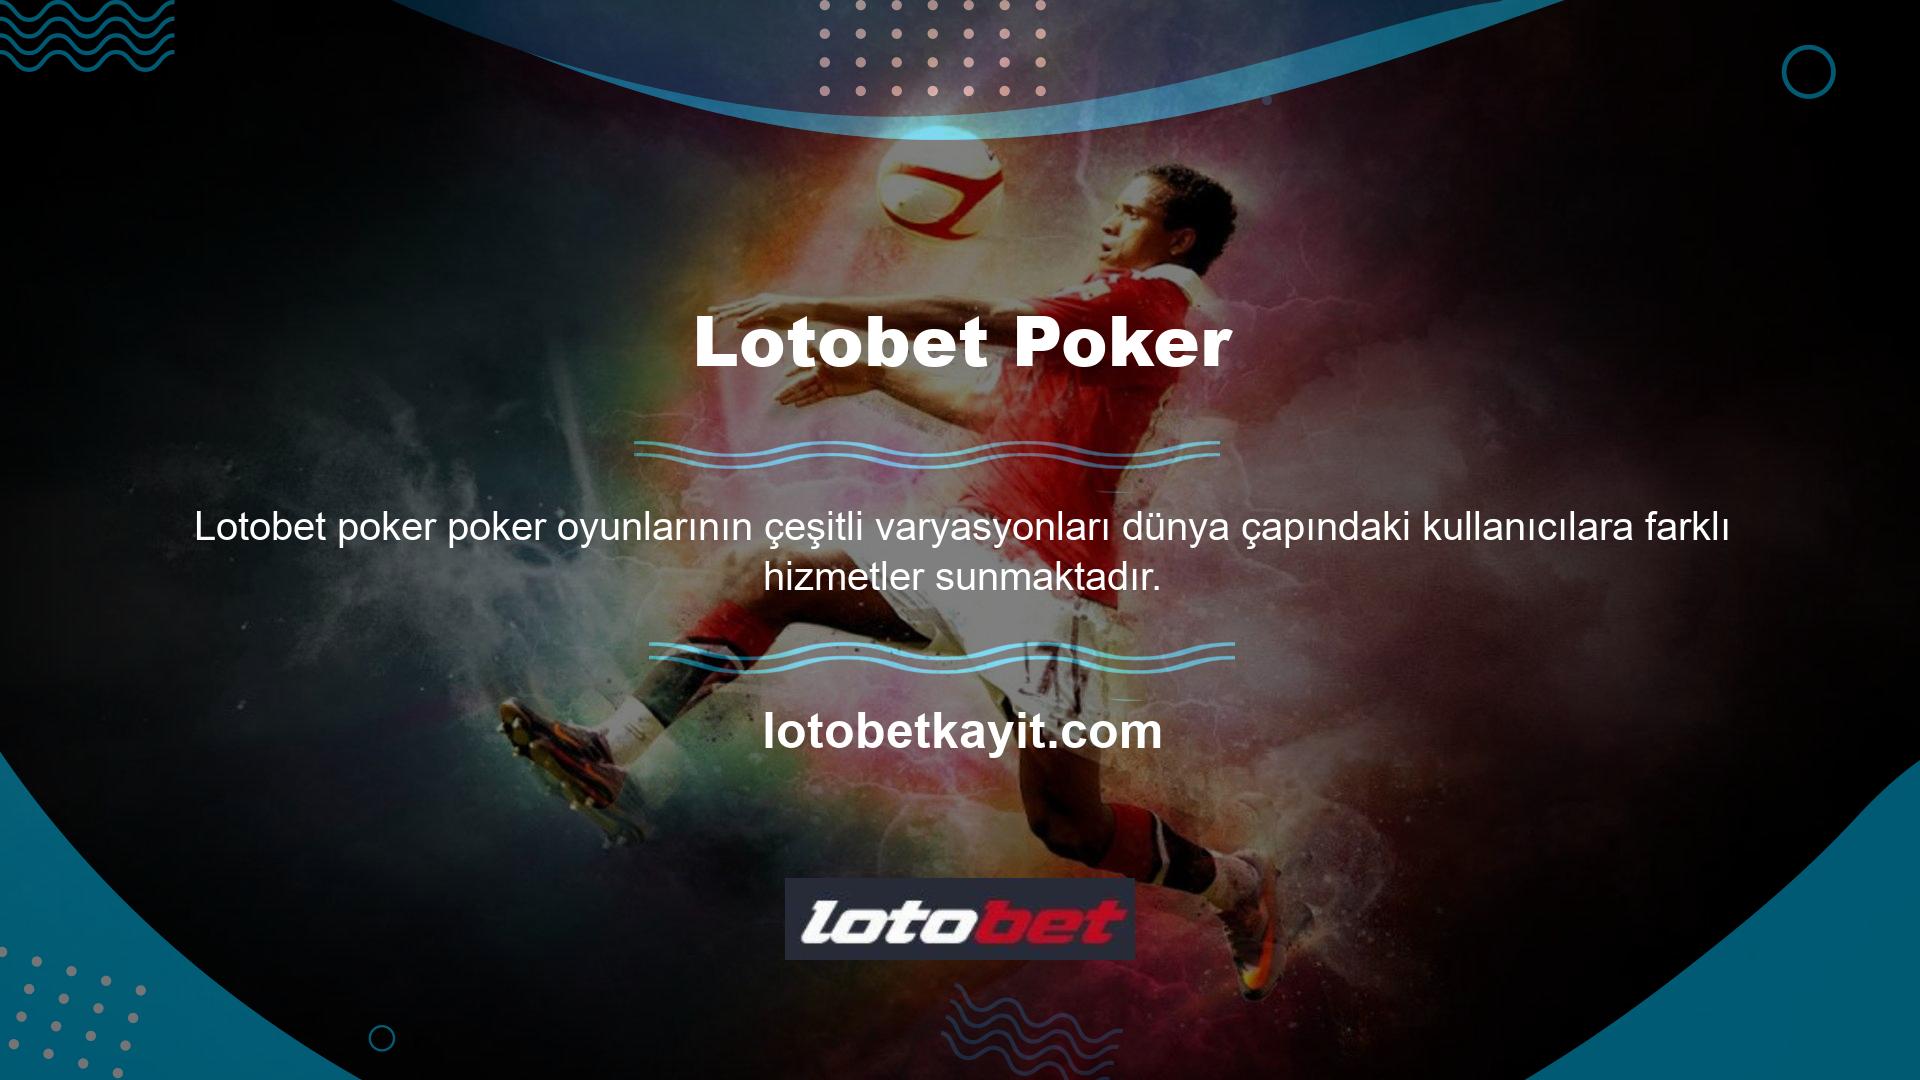 Lotobet poker oyunu seçimleri her yetenek seviyesindeki oyunculara yönelik seçenekler sunmaktadır